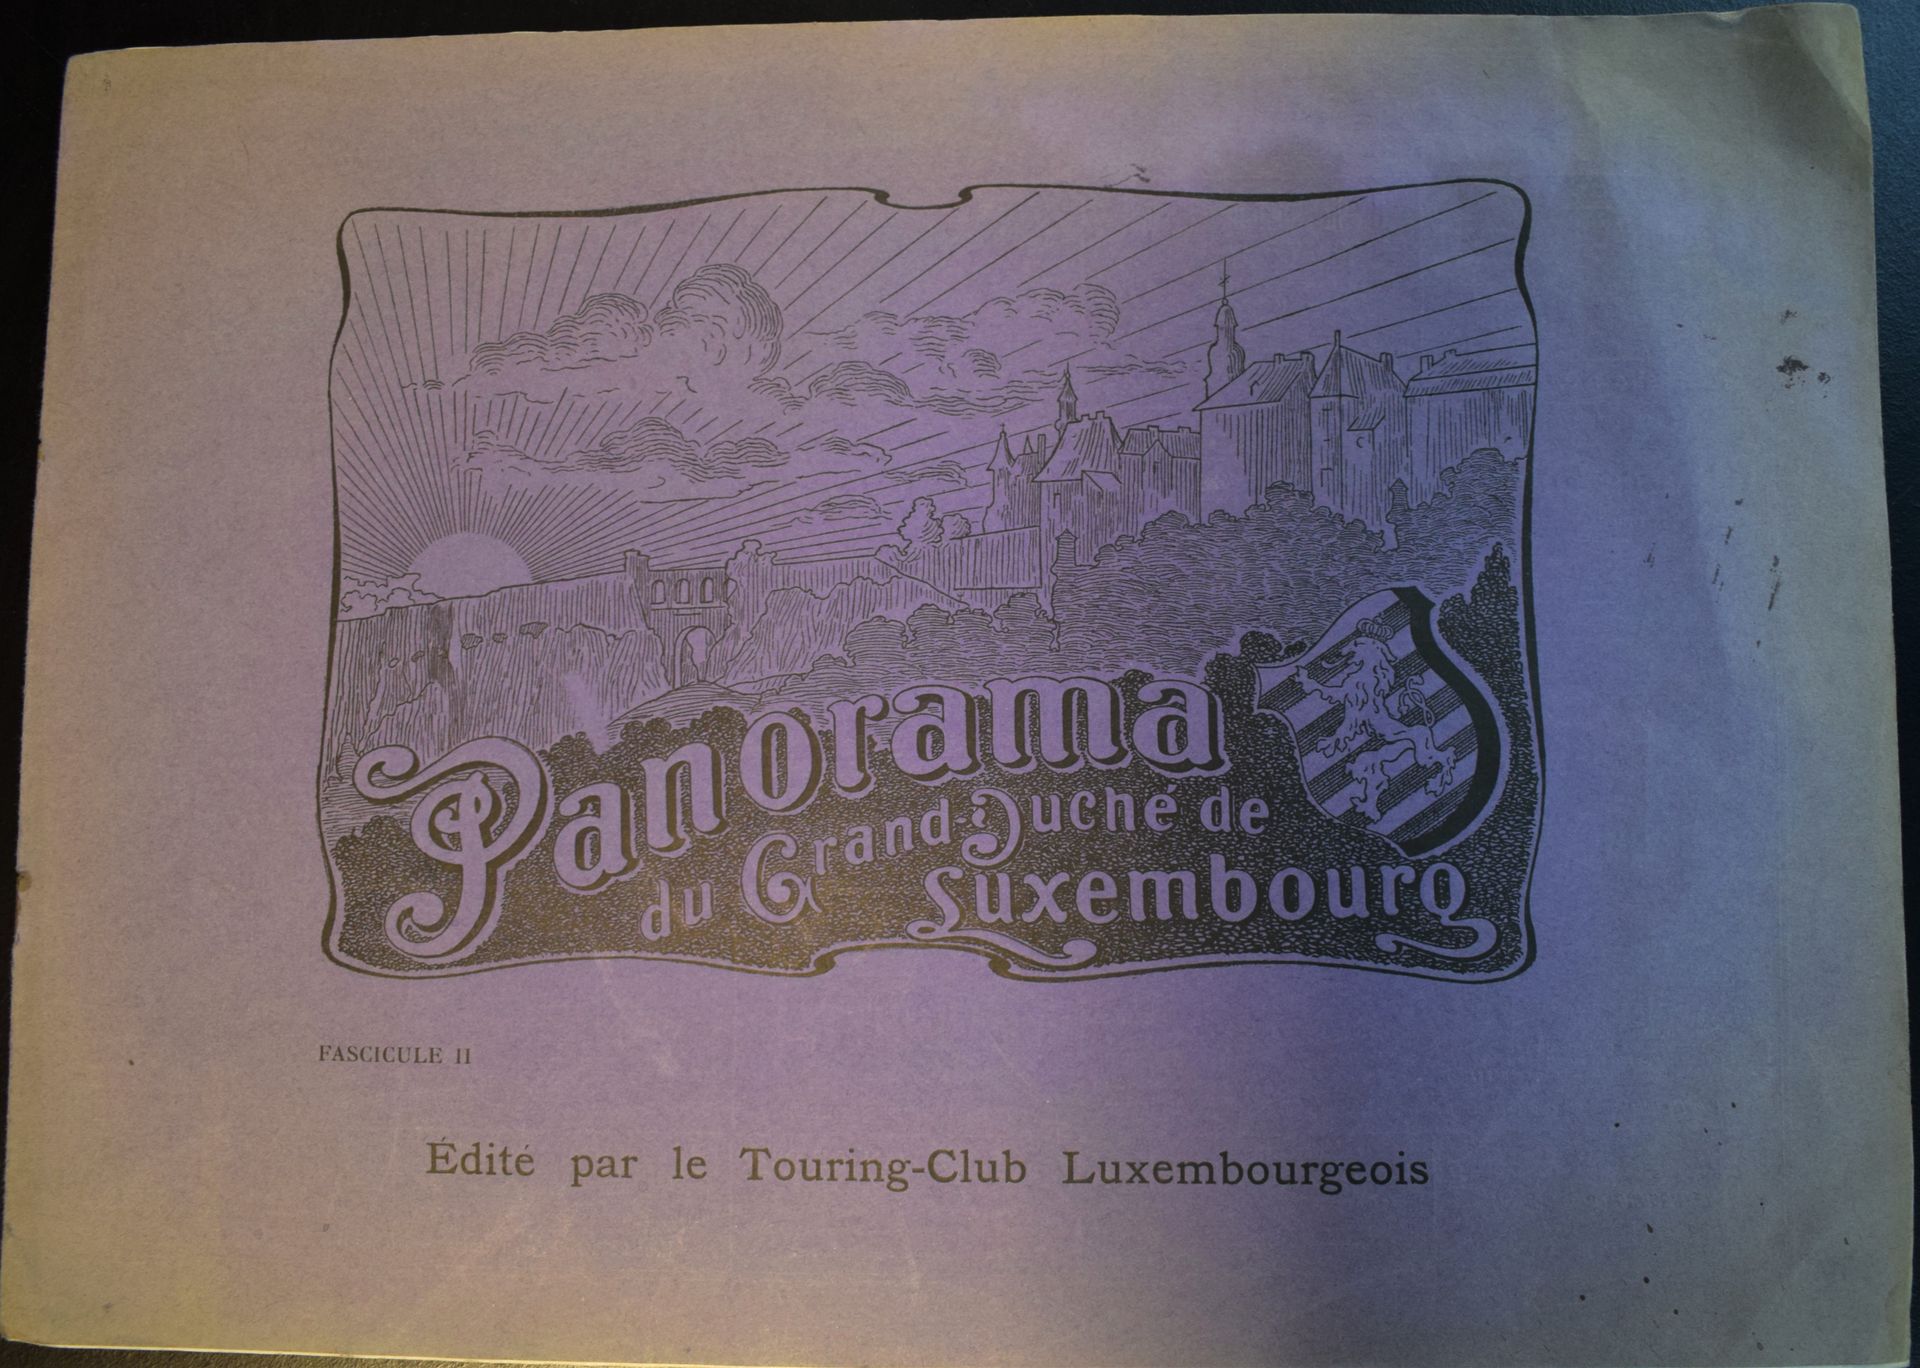 Null (旅游)卢森堡大公国全景，由卢森堡旅游俱乐部出版的第二分册，罕见的分册，原版淡紫色封面，状况良好，大约在1910/1920年。